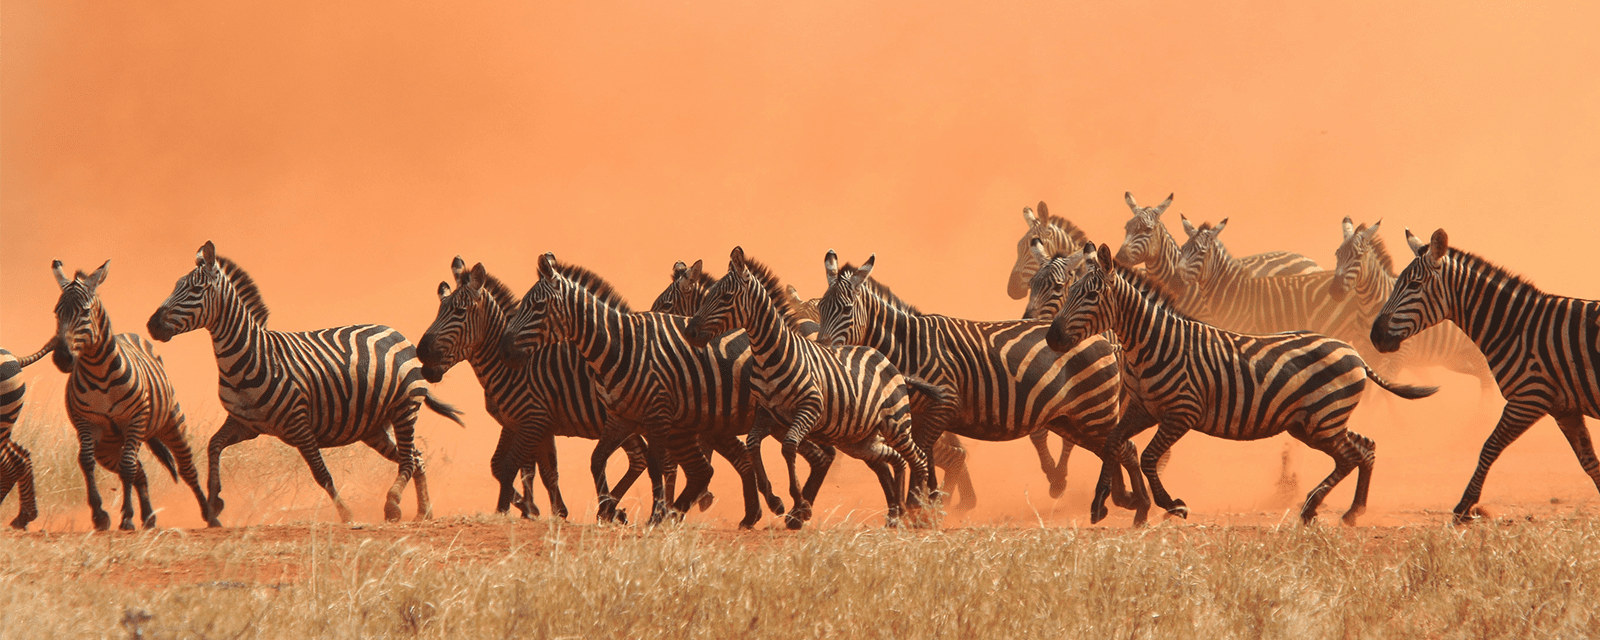 Tcrp Banner Zebras Running